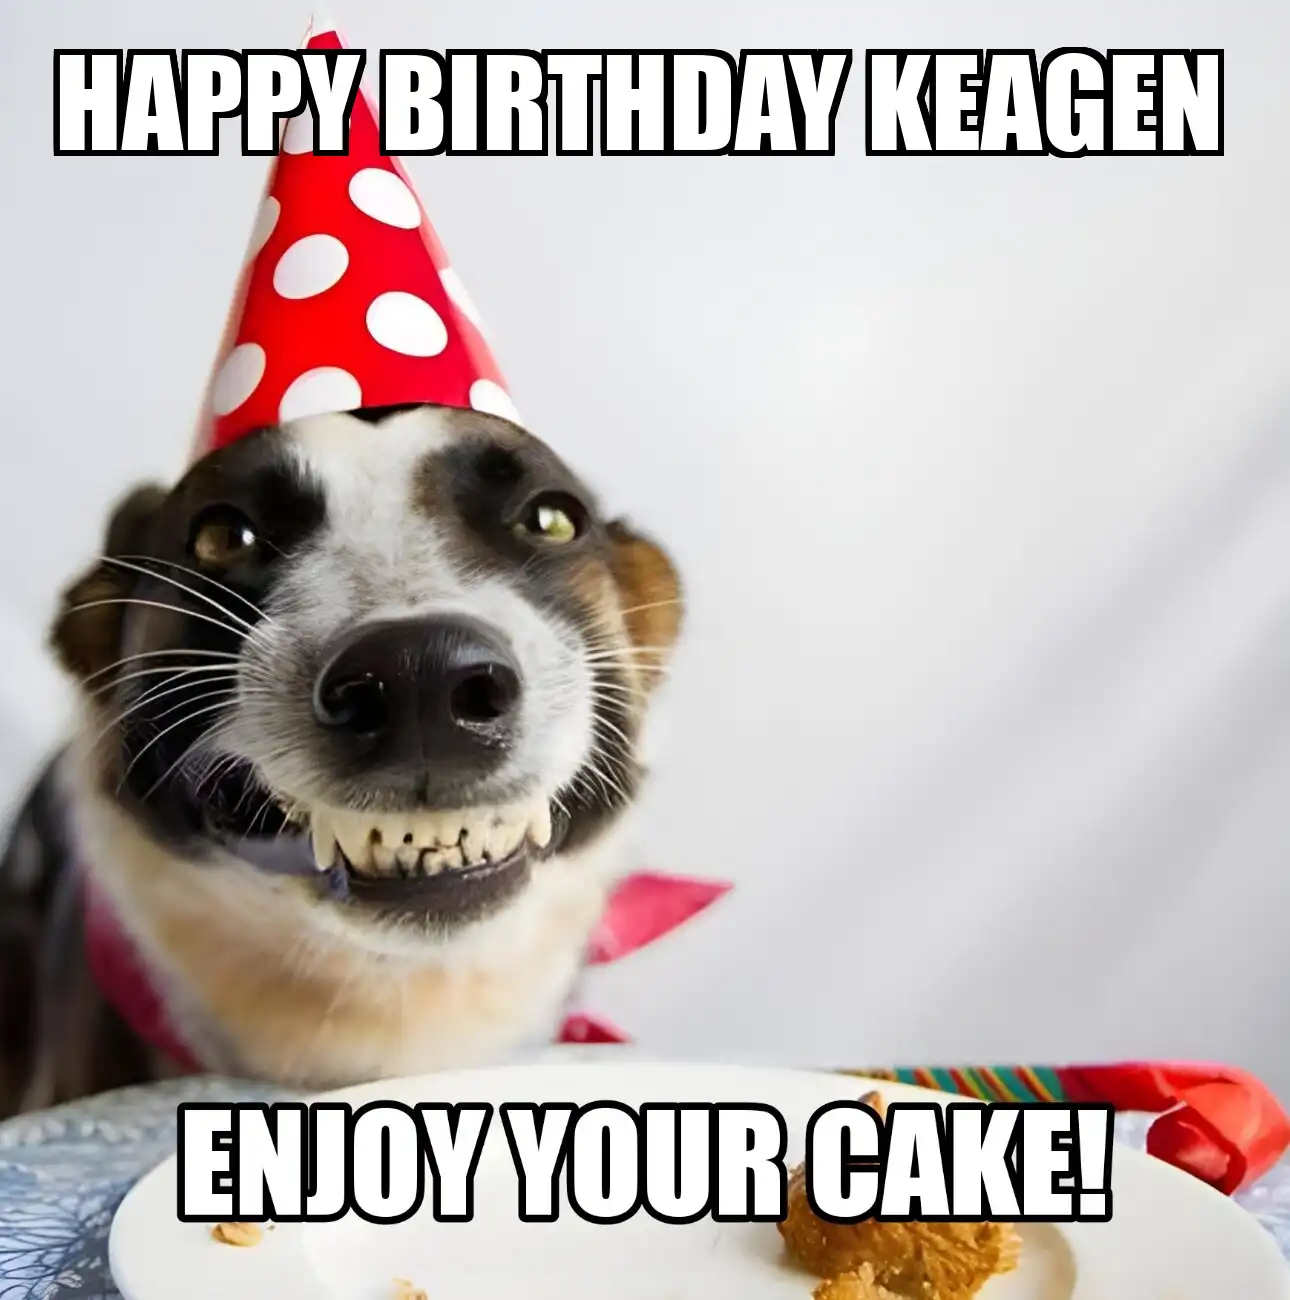 Happy Birthday Keagen Enjoy Your Cake Dog Meme